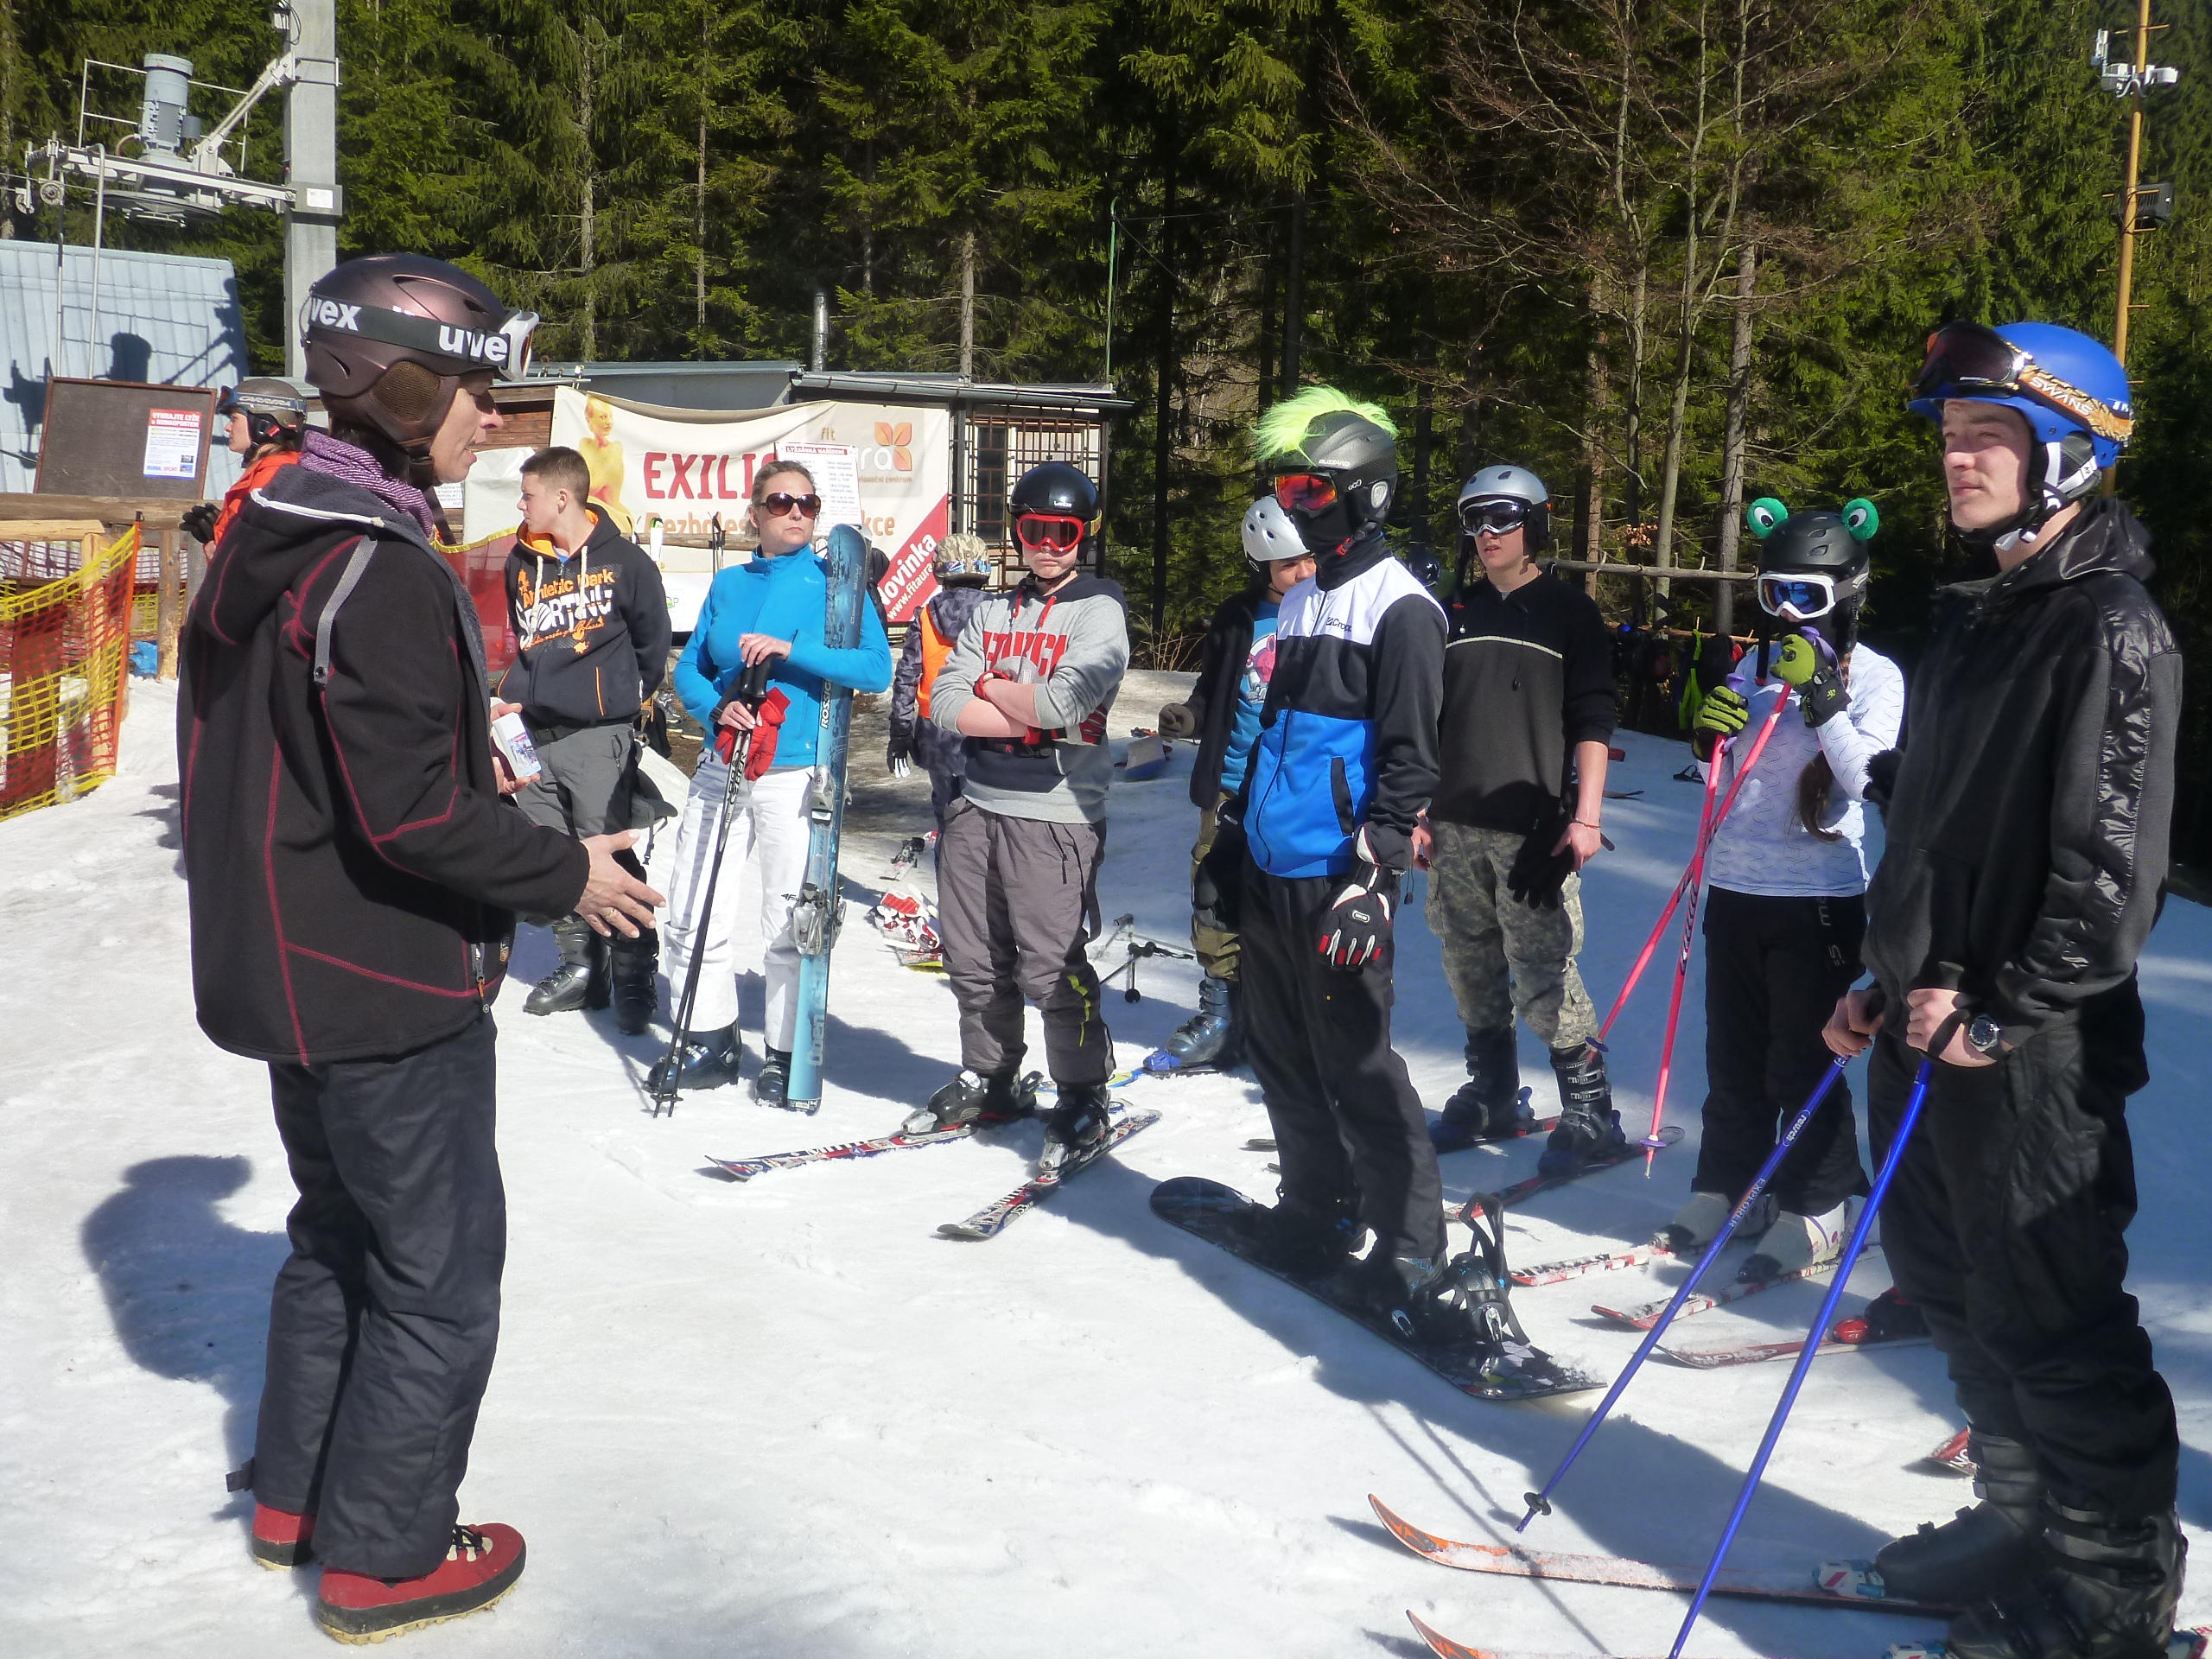 Poláci na lyžích